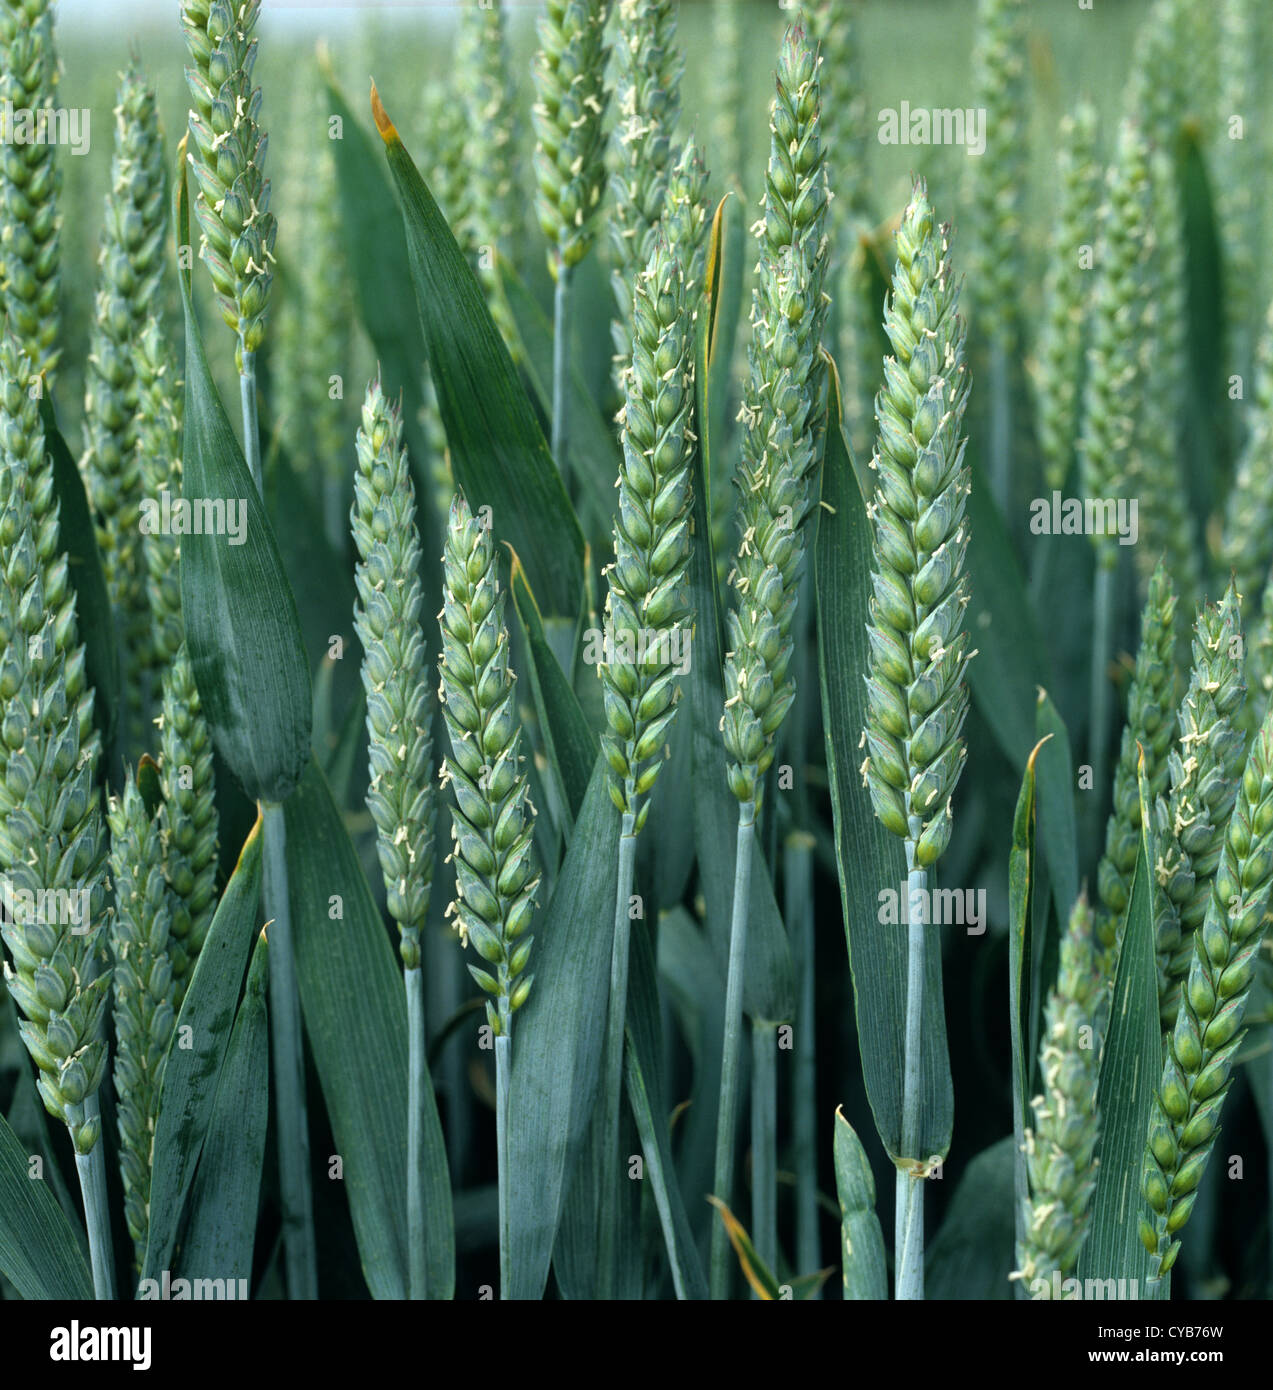 Winter wheat crop in flowering ear Stock Photo